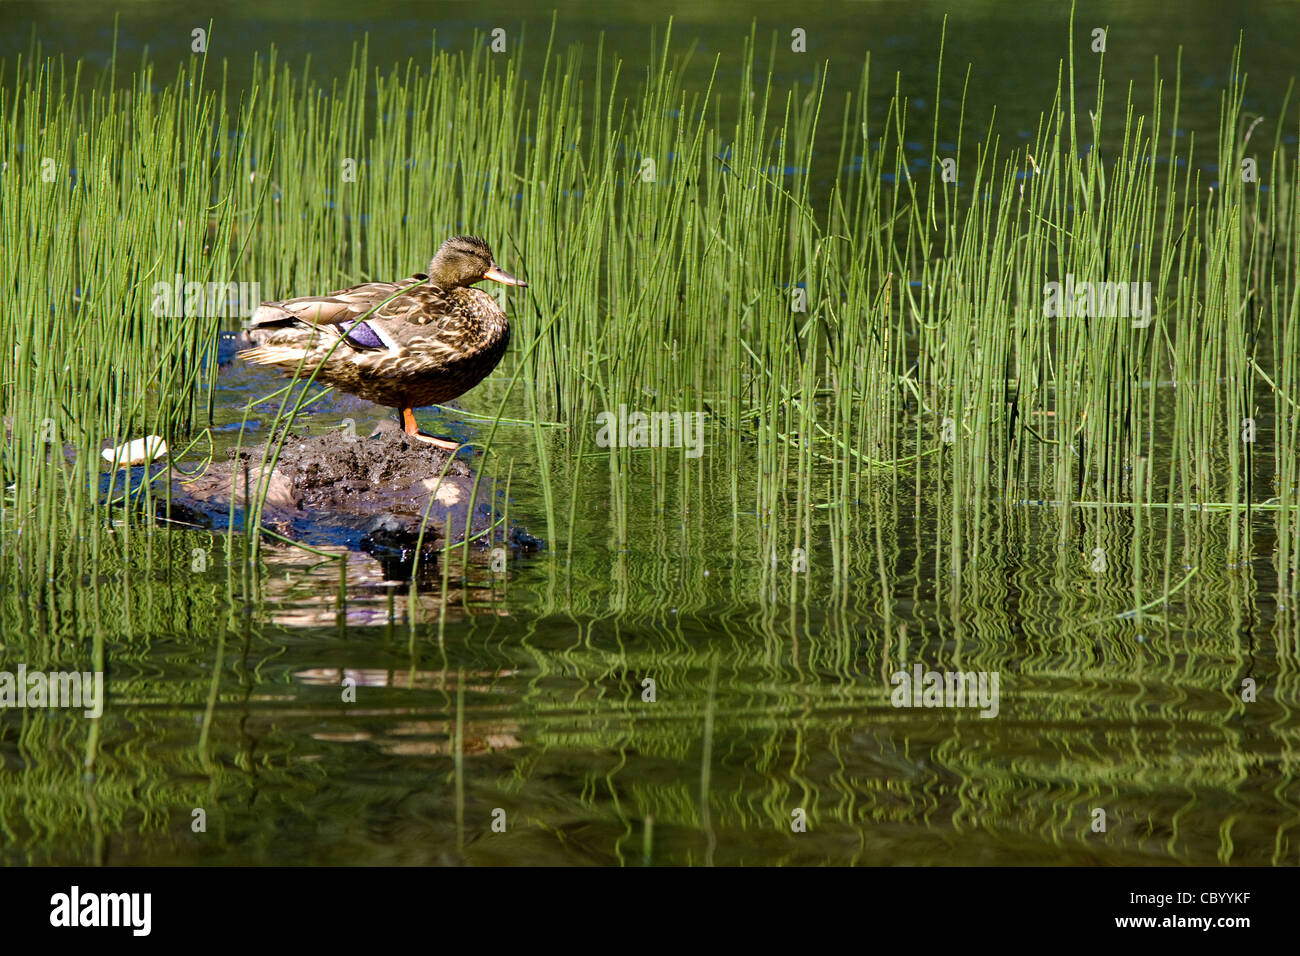 Femmina Mallard duck in appoggio sul tronco galleggiante Foto Stock